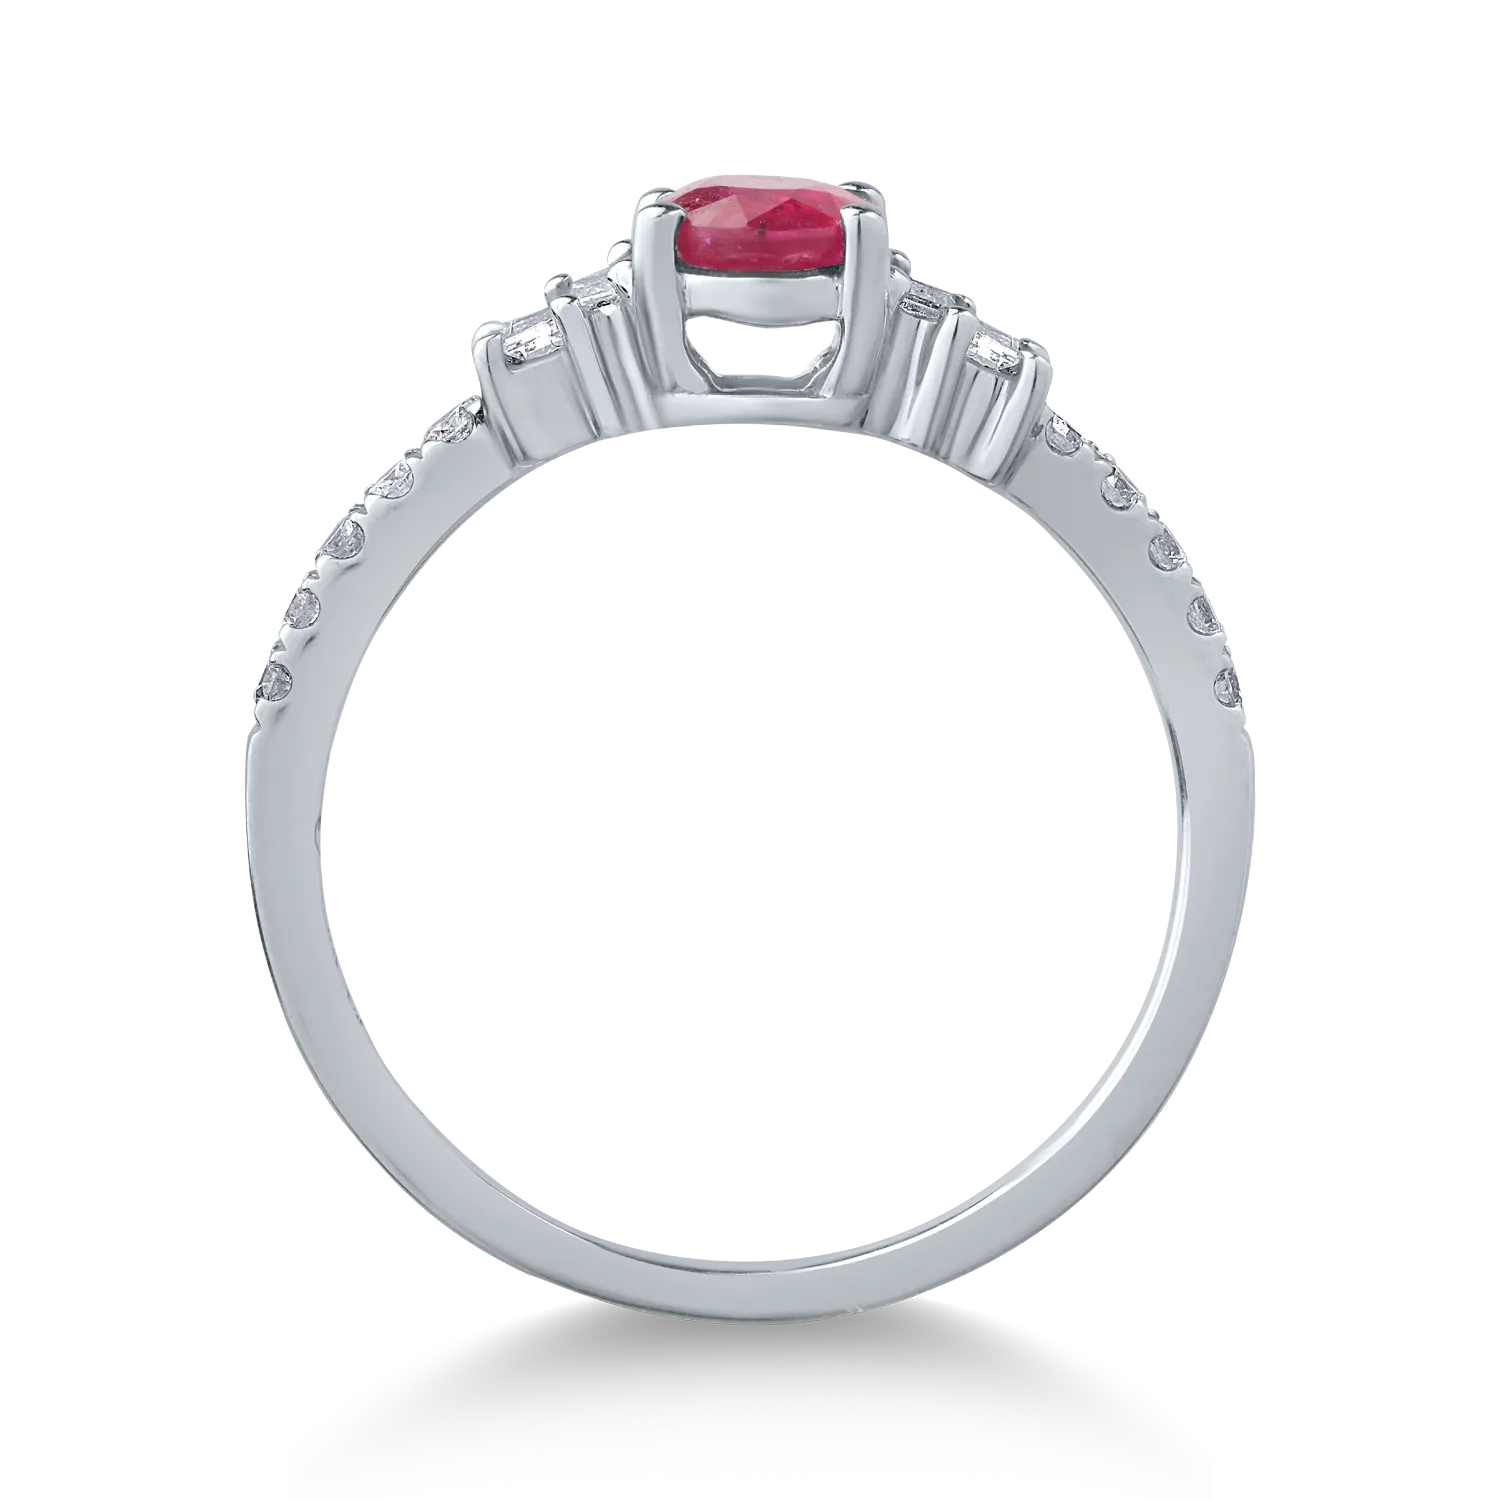 18K fehérarany gyűrű 0.75ct rubinnal és 0.25ct gyémántokkal